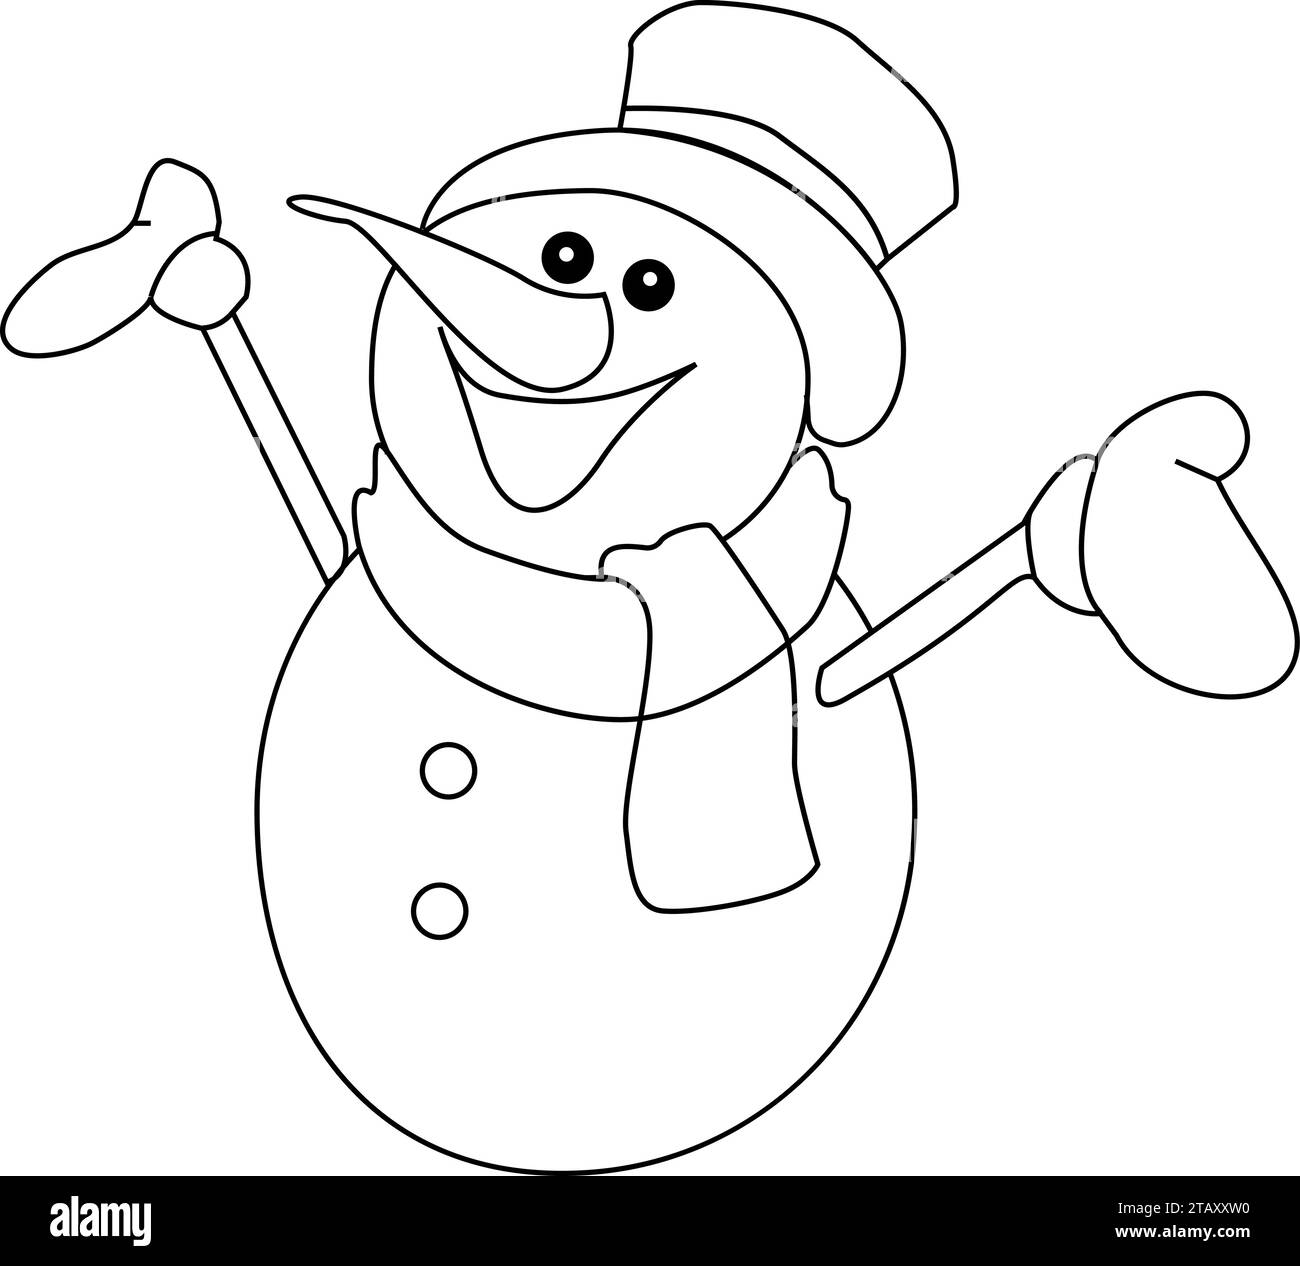 Icona carina del personaggio di pupazzo di neve, pagina da colorare in bianco e nero contorno di Un pupazzo di neve con Una scopa, pupazzo di neve con cappello e sciarpa Illustrazione Vettoriale